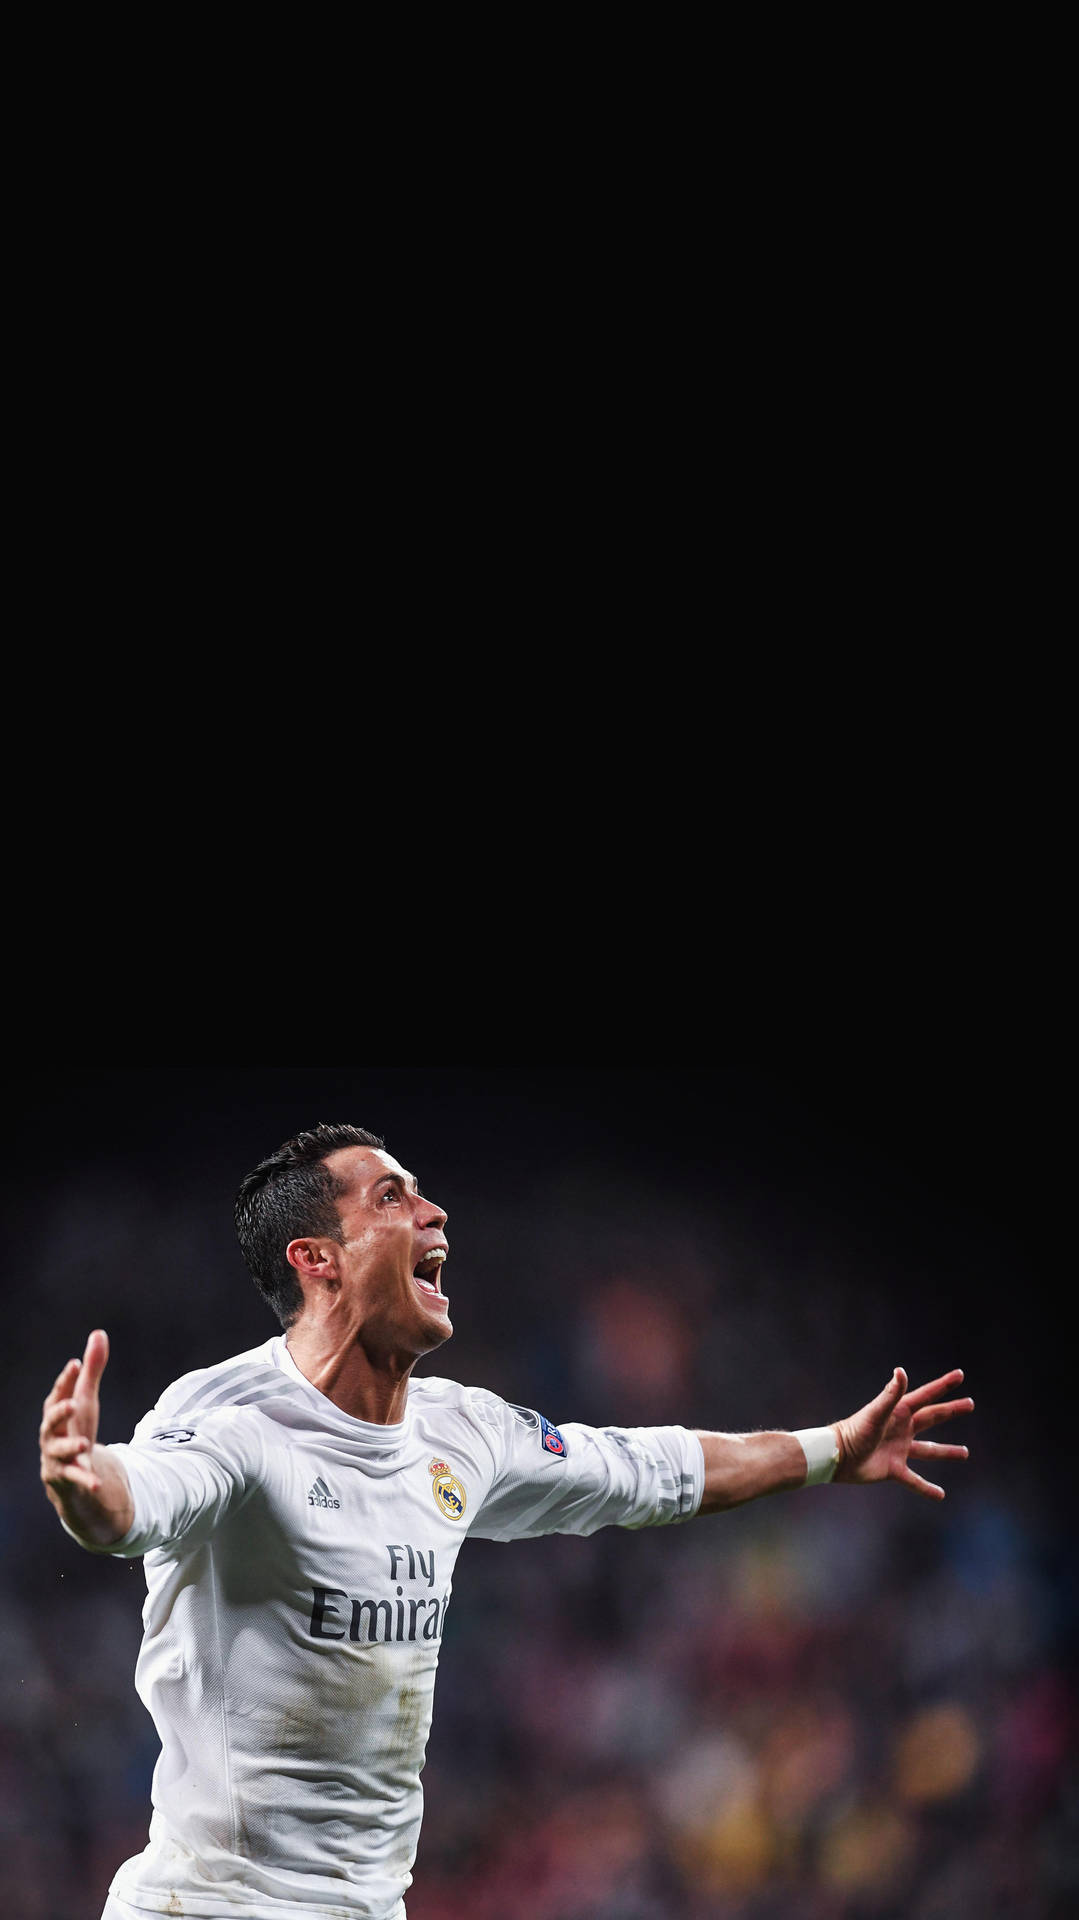 Real Madrid Cristiano Ronaldo Celebrating Background